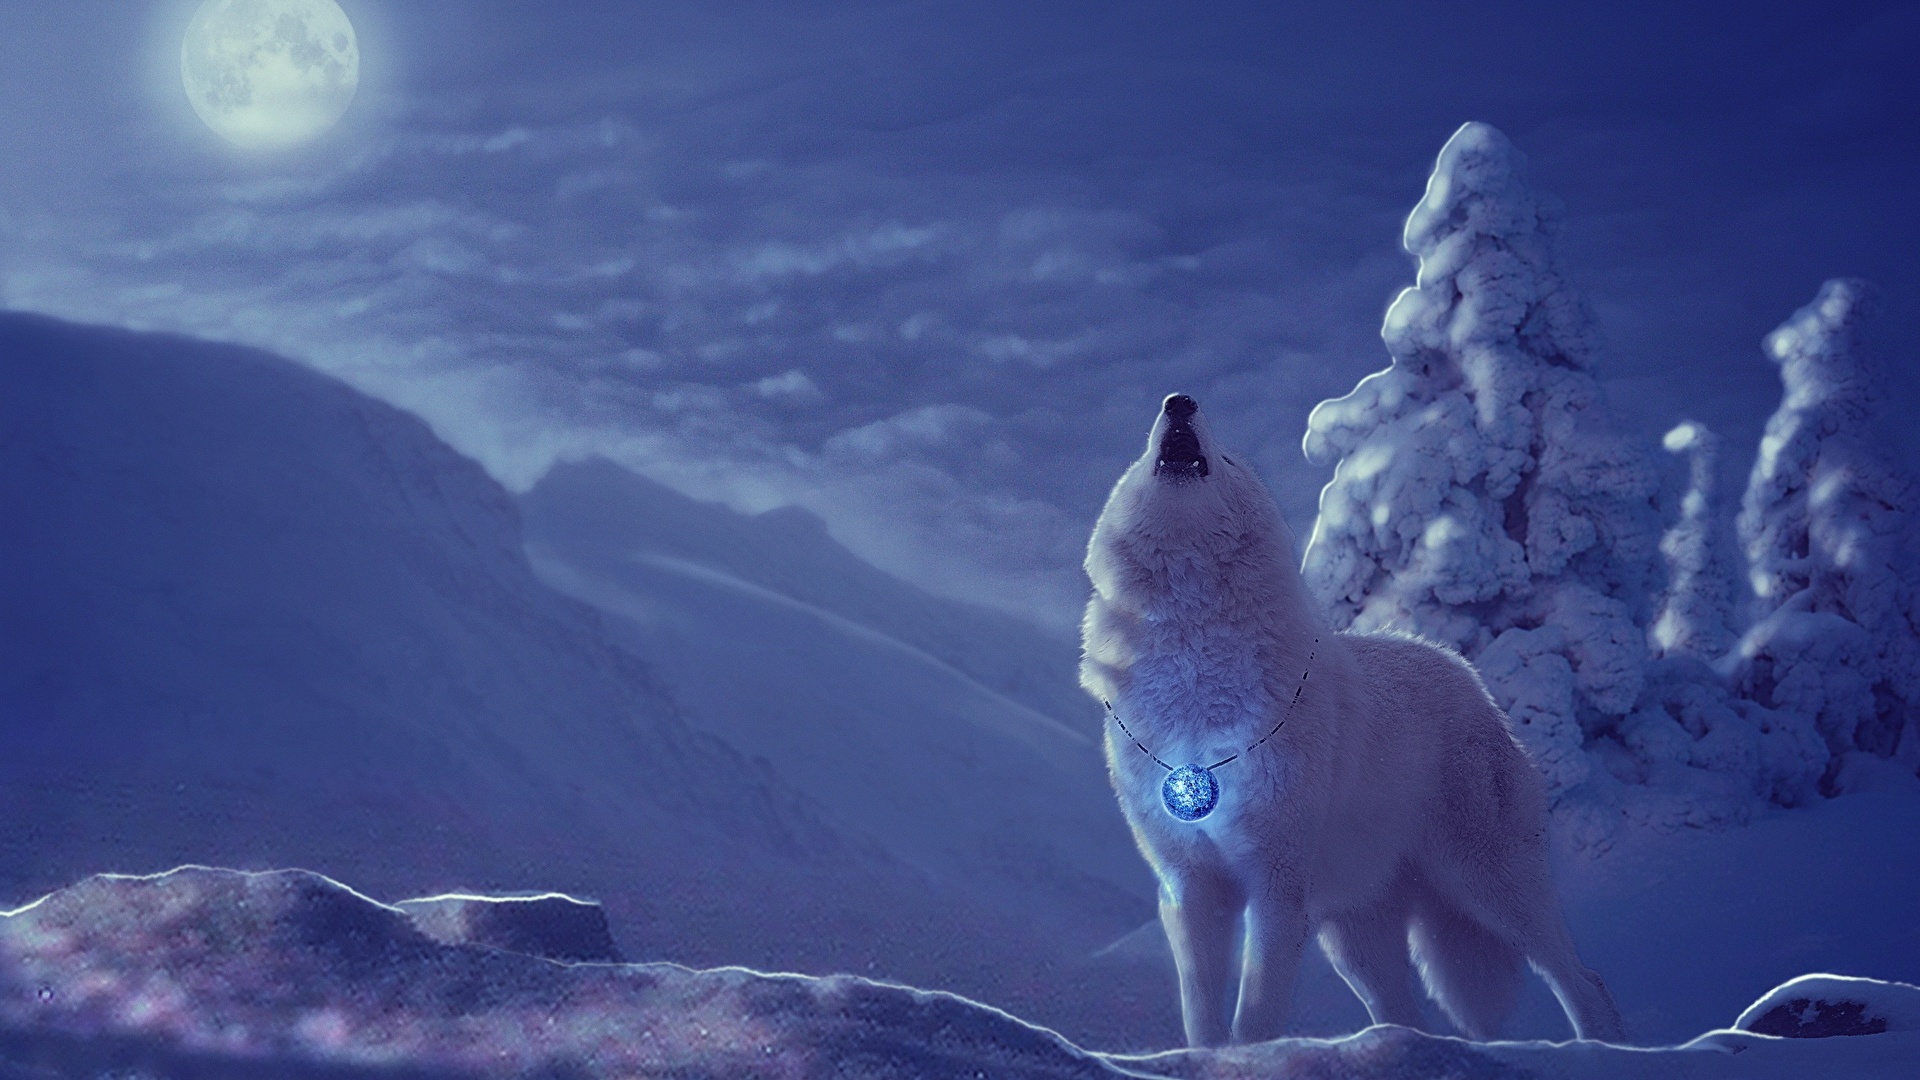 壁紙 19x1080 オオカミ 描かれた壁紙 冬 ファンタジー動物 雪 夜 月 ファンタジー ダウンロード 写真